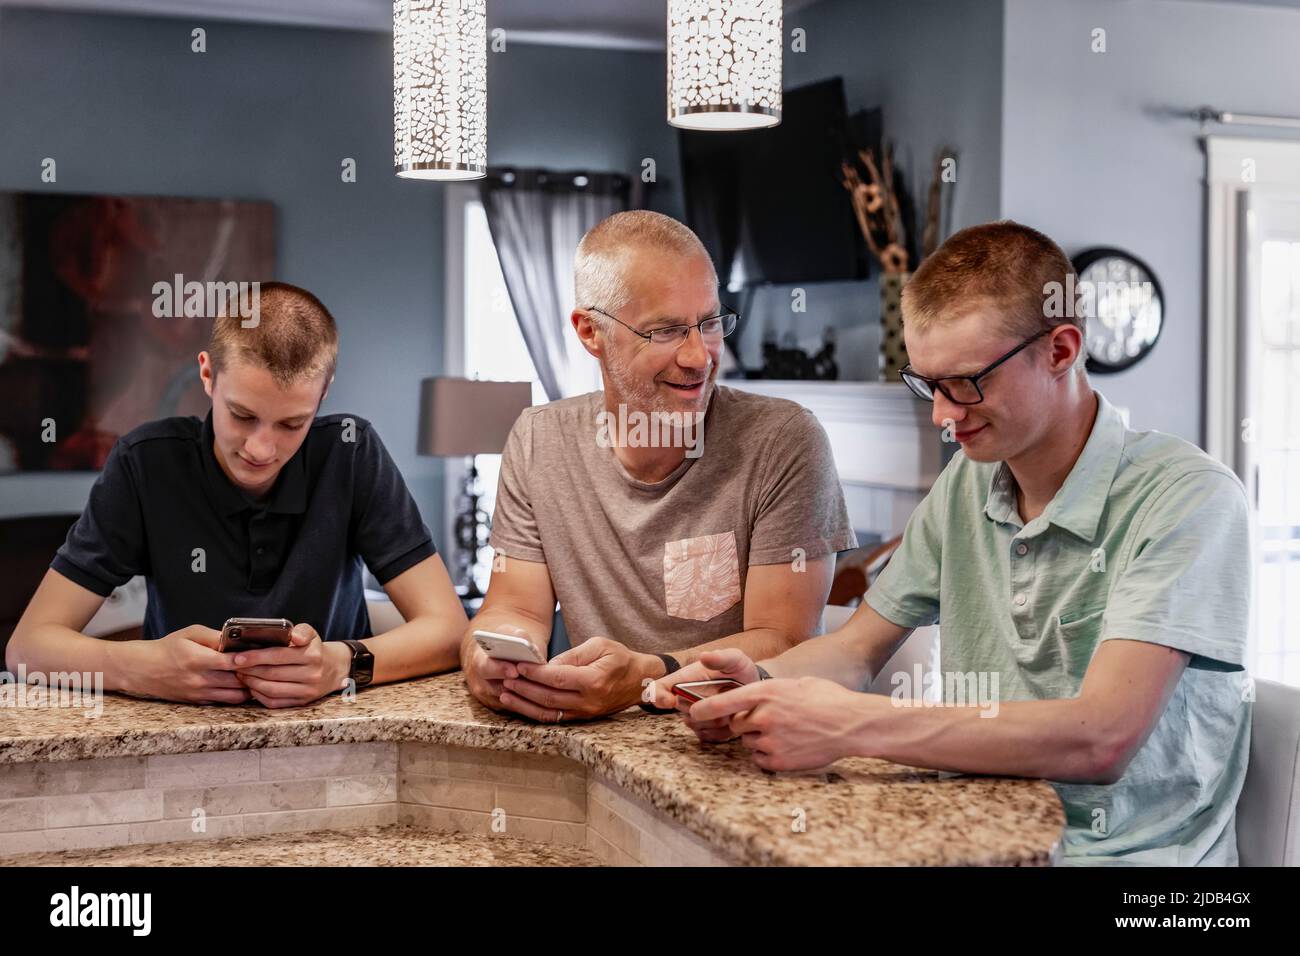 Padre y dos hijos se sientan en la isla de la cocina en casa usando sus teléfonos inteligentes, el padre tratando de hablar con ellos; Edmonton, Alberta, Canadá Foto de stock